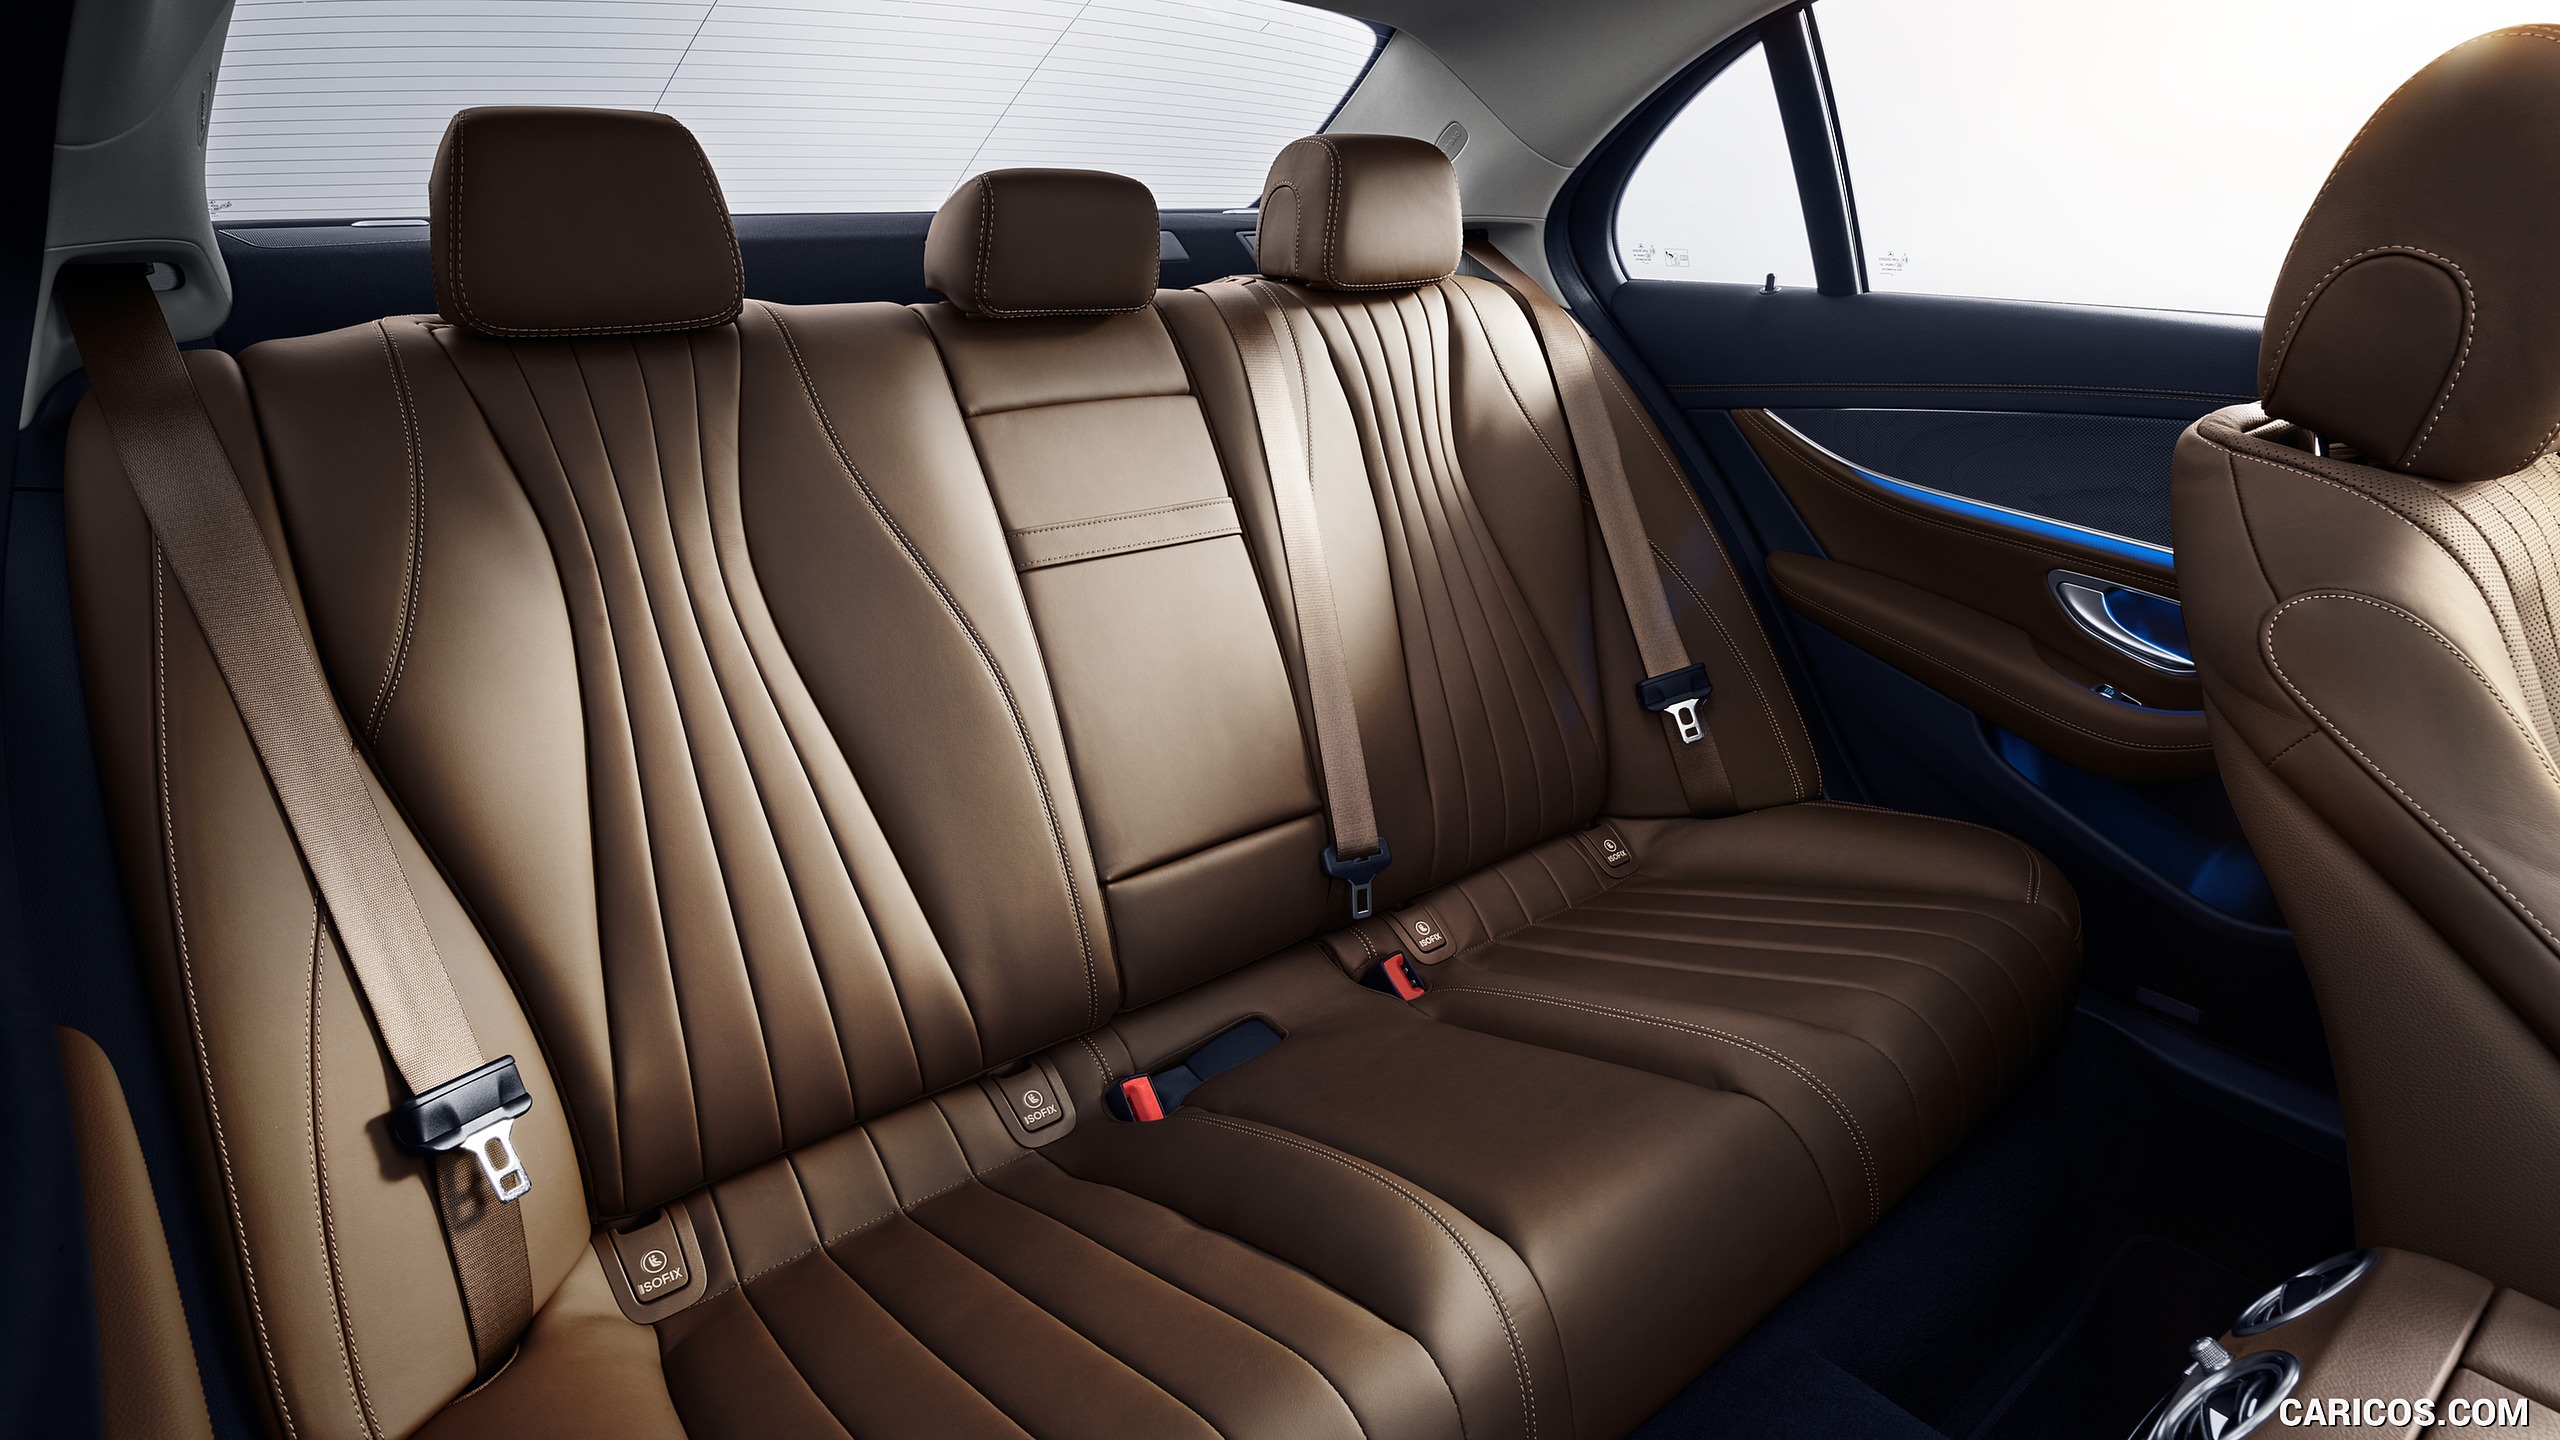 2021 Mercedes-Benz E-Class - Interior, Rear Seats, #47 of 144